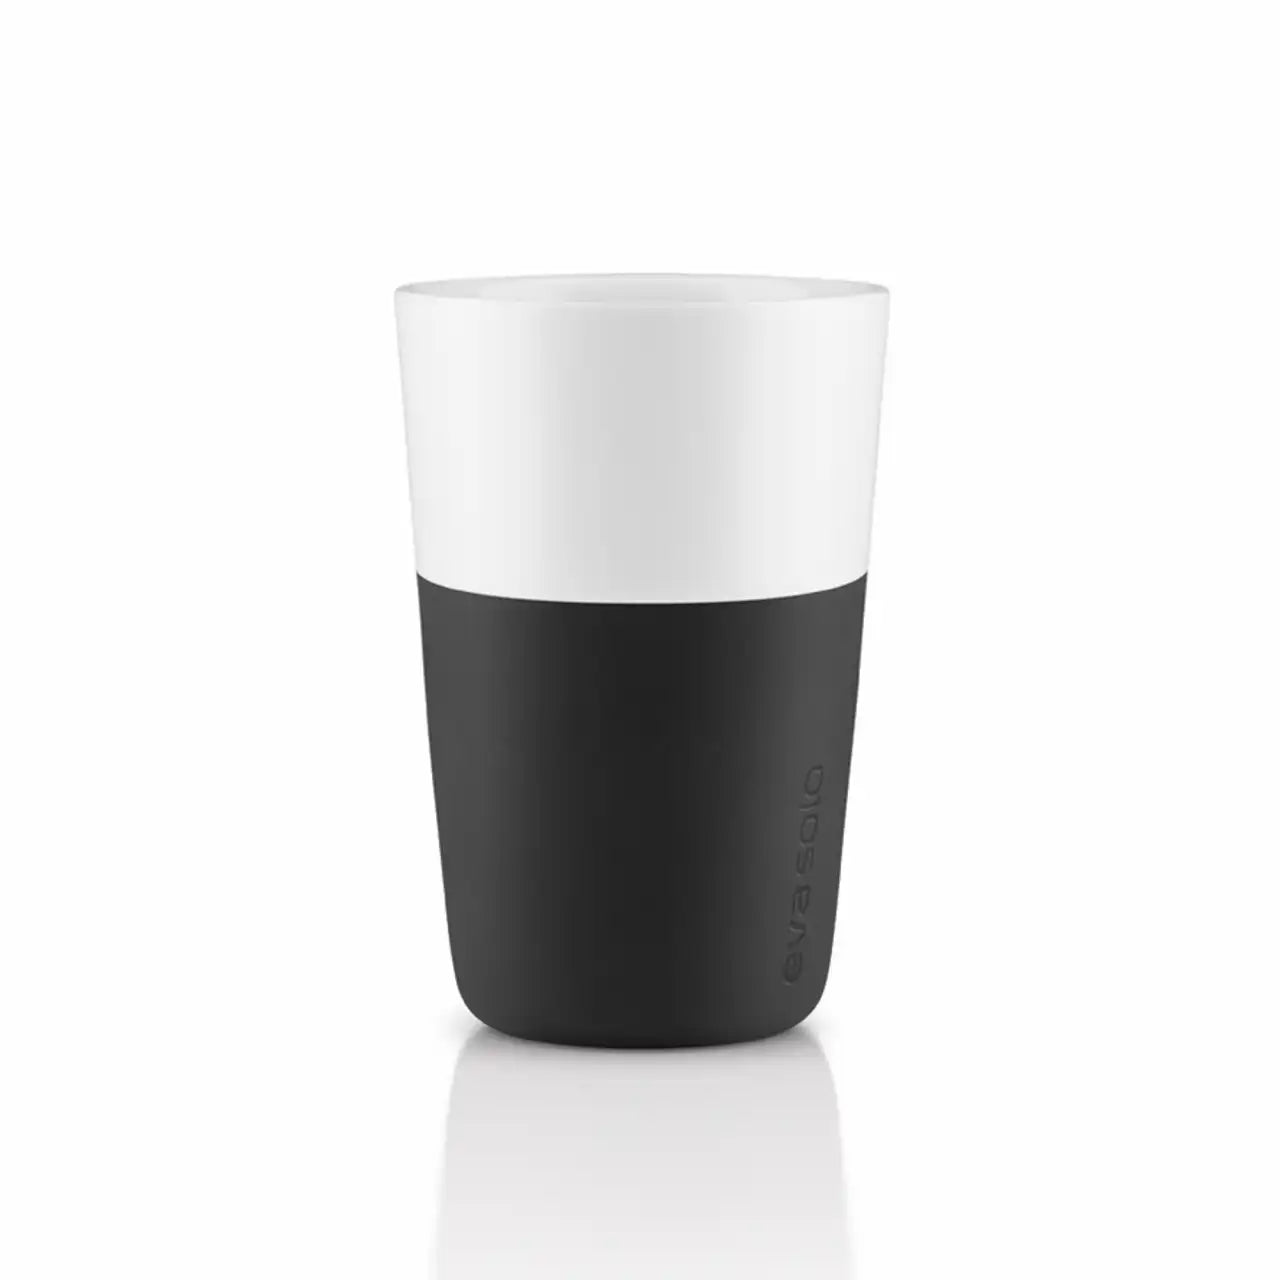 Cafe Latte tumbler - 2 PCS. - CARBON BLACK